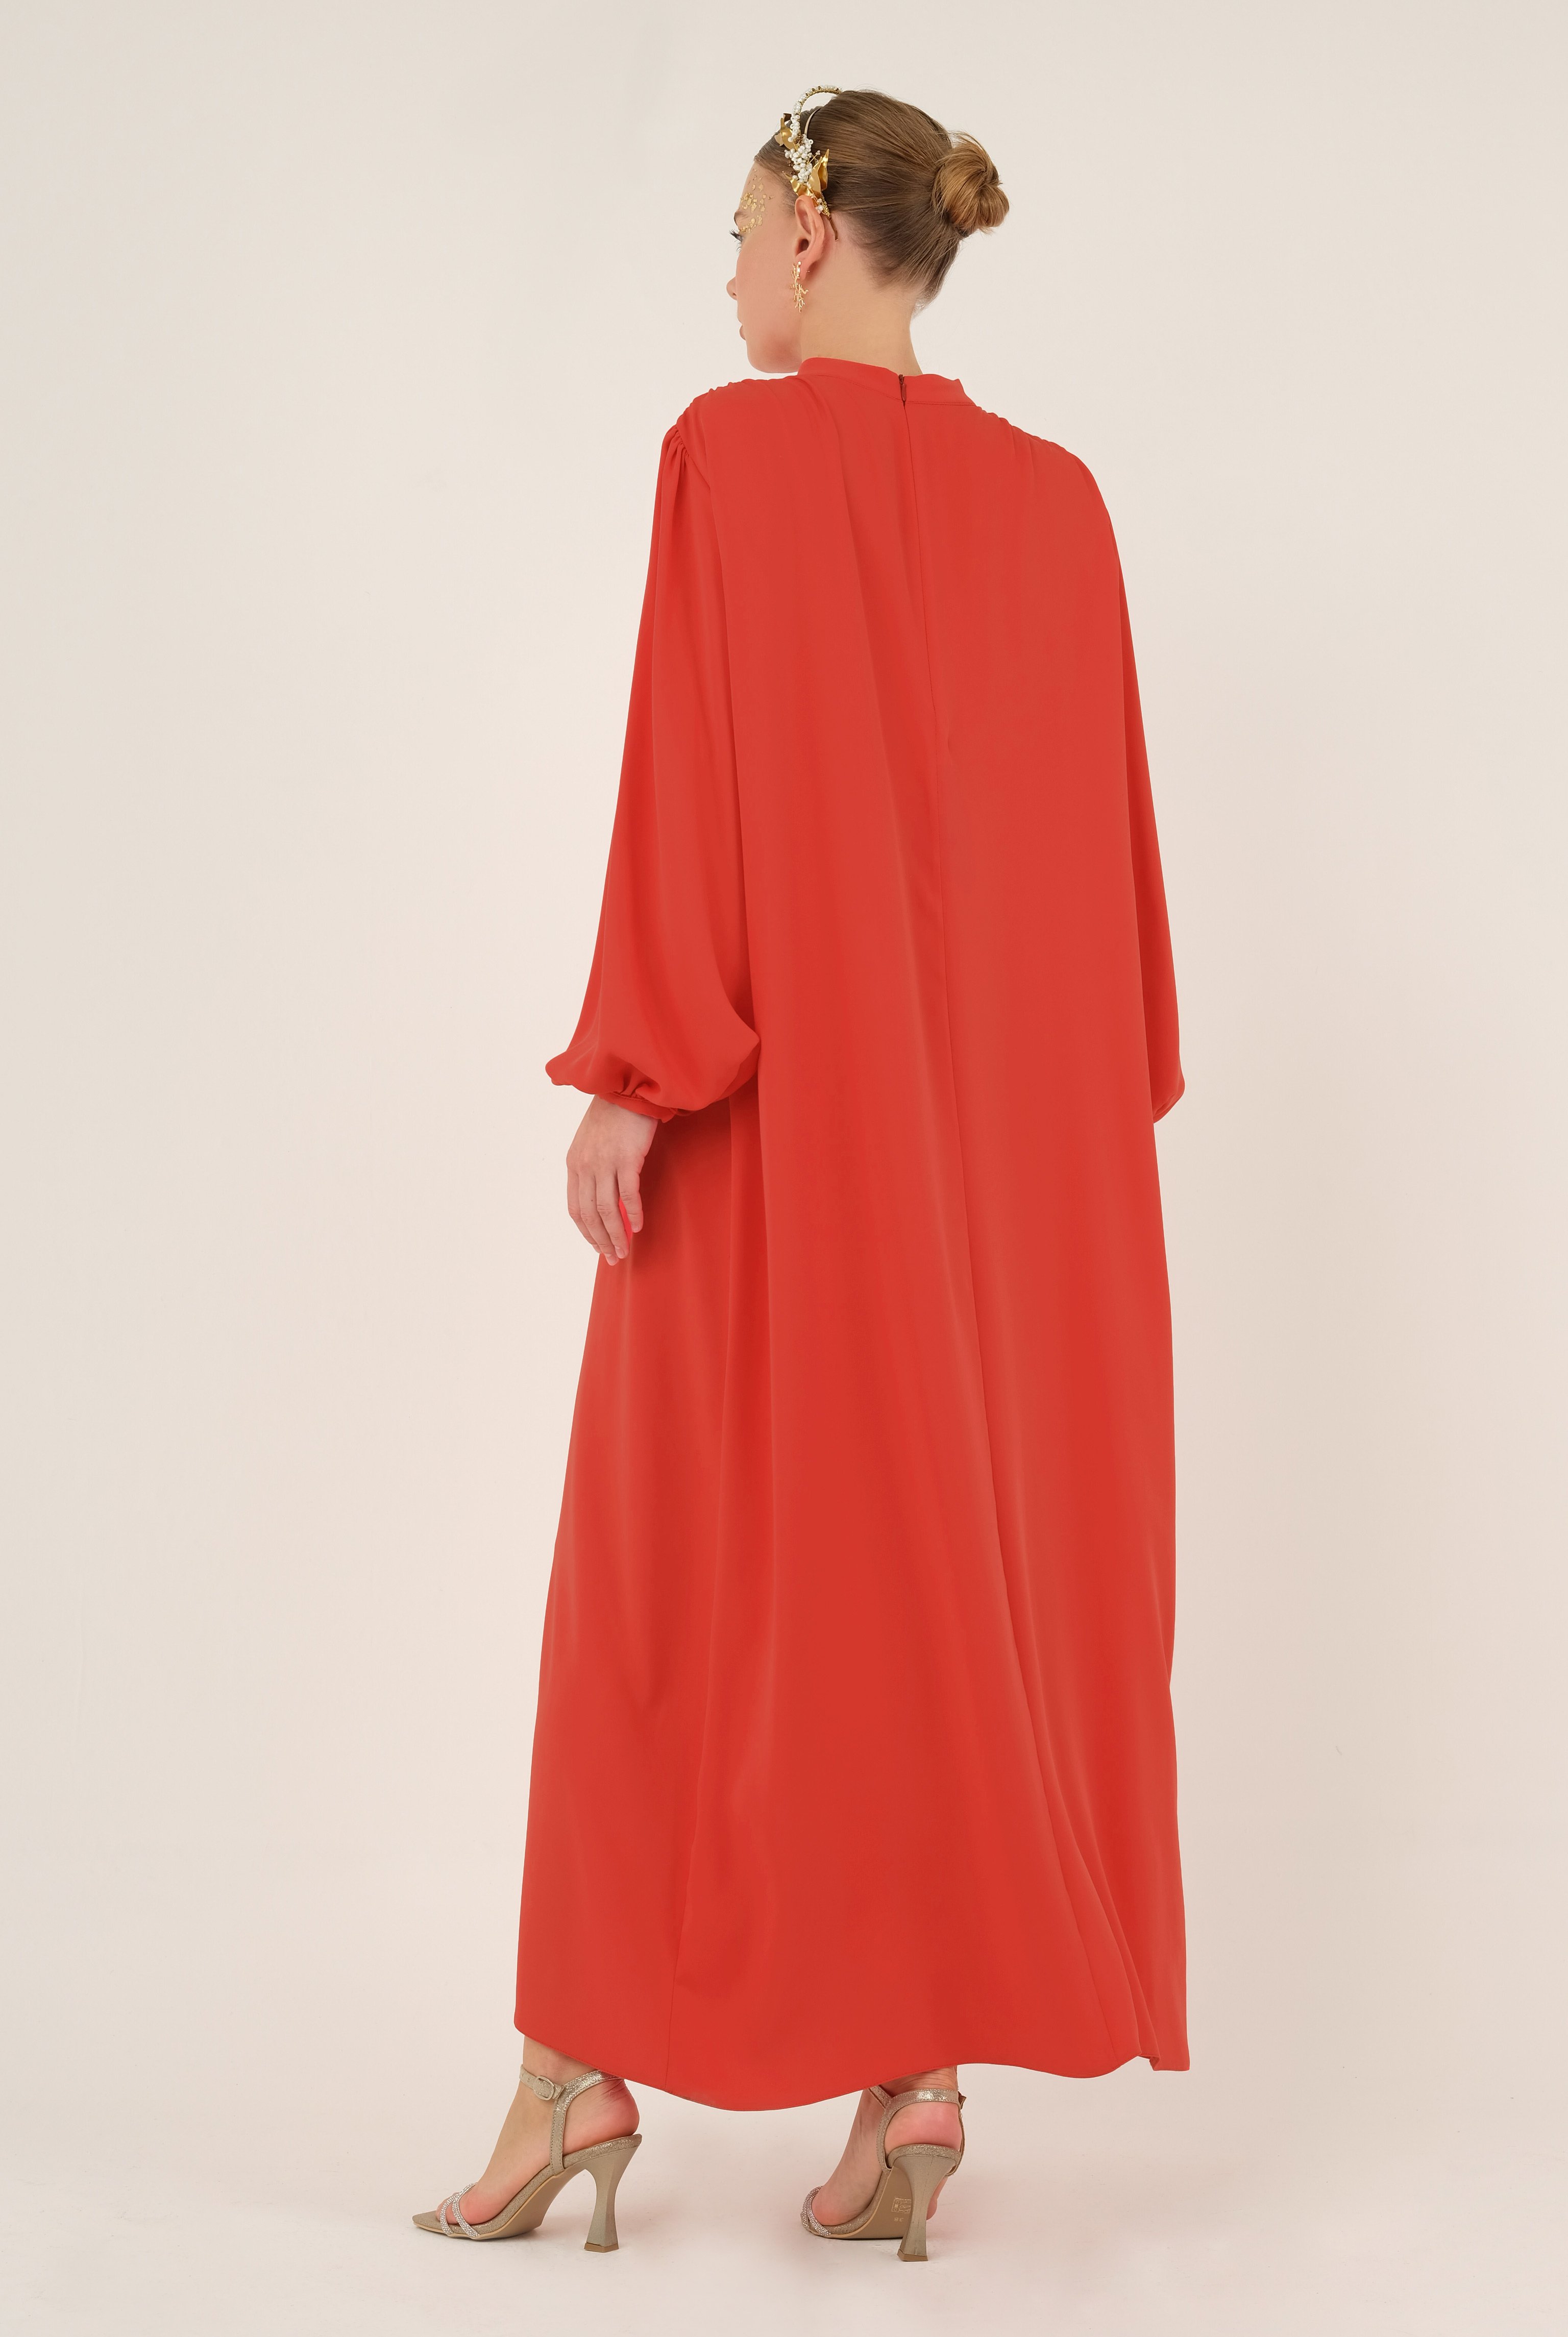 Shirred Collared Dress Garnet